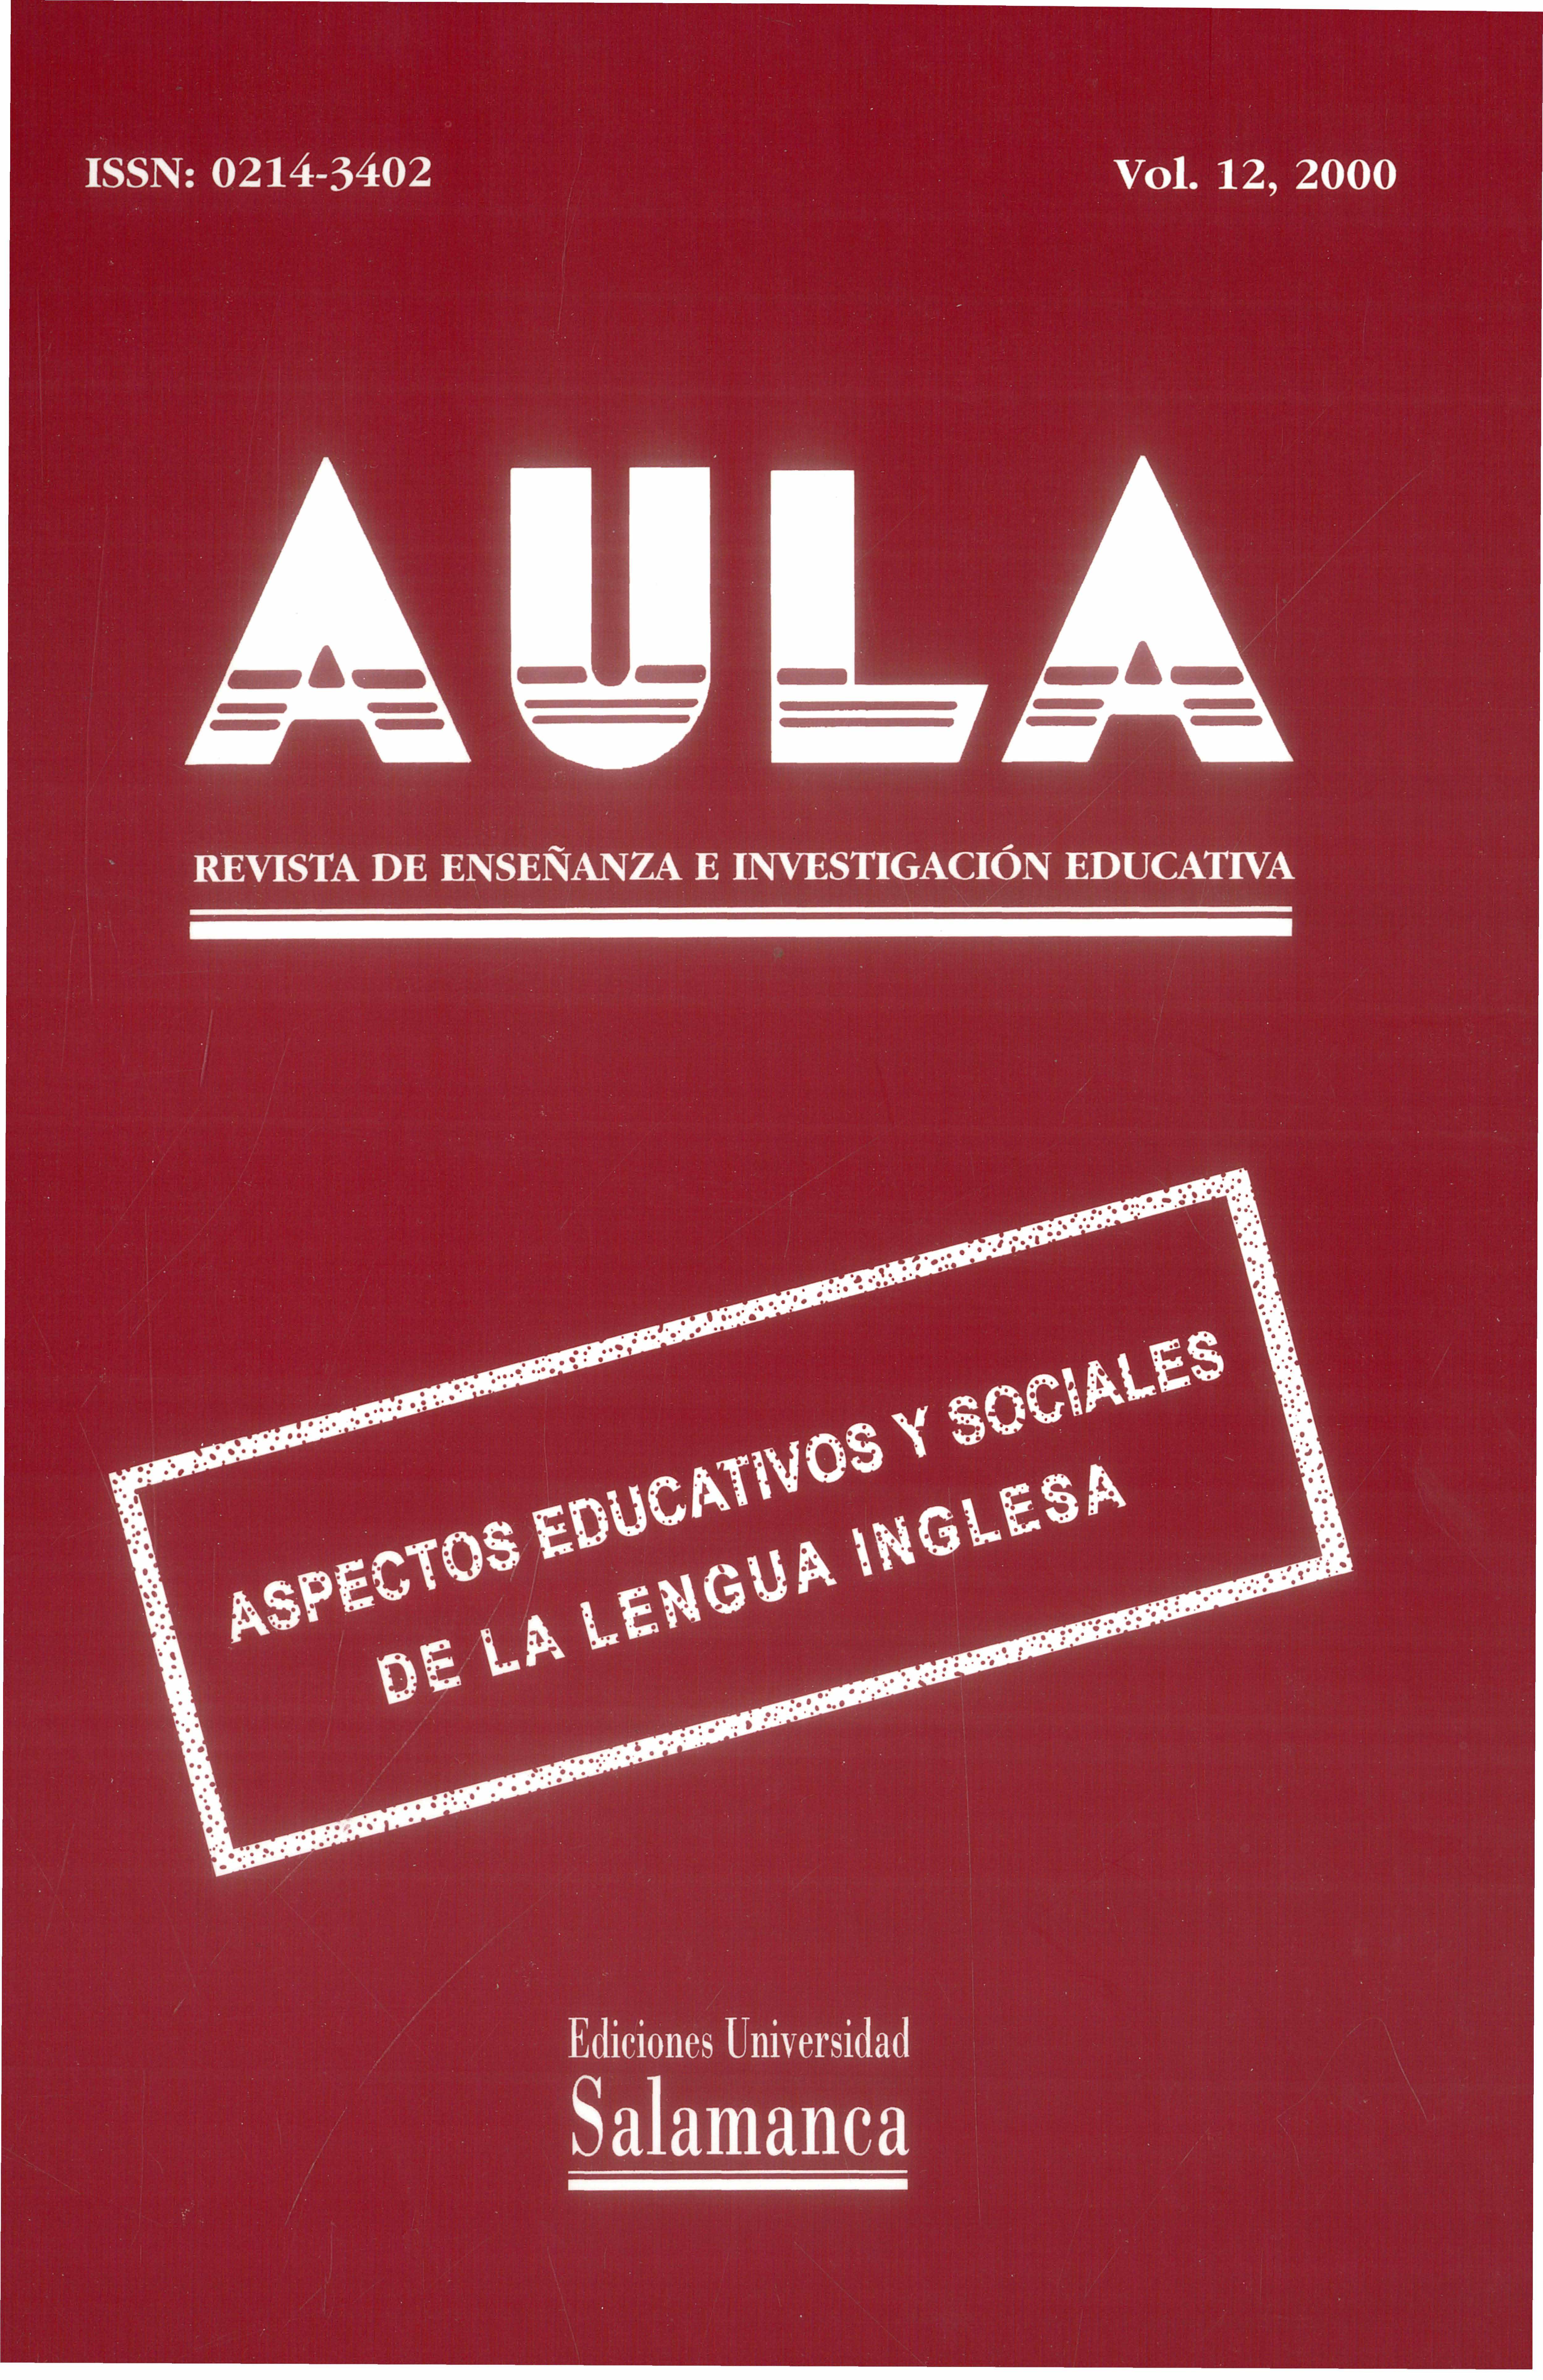                         Ver Vol. 12 (2000): Aspectos eductivos y sociales de la lengua inglesa
                    